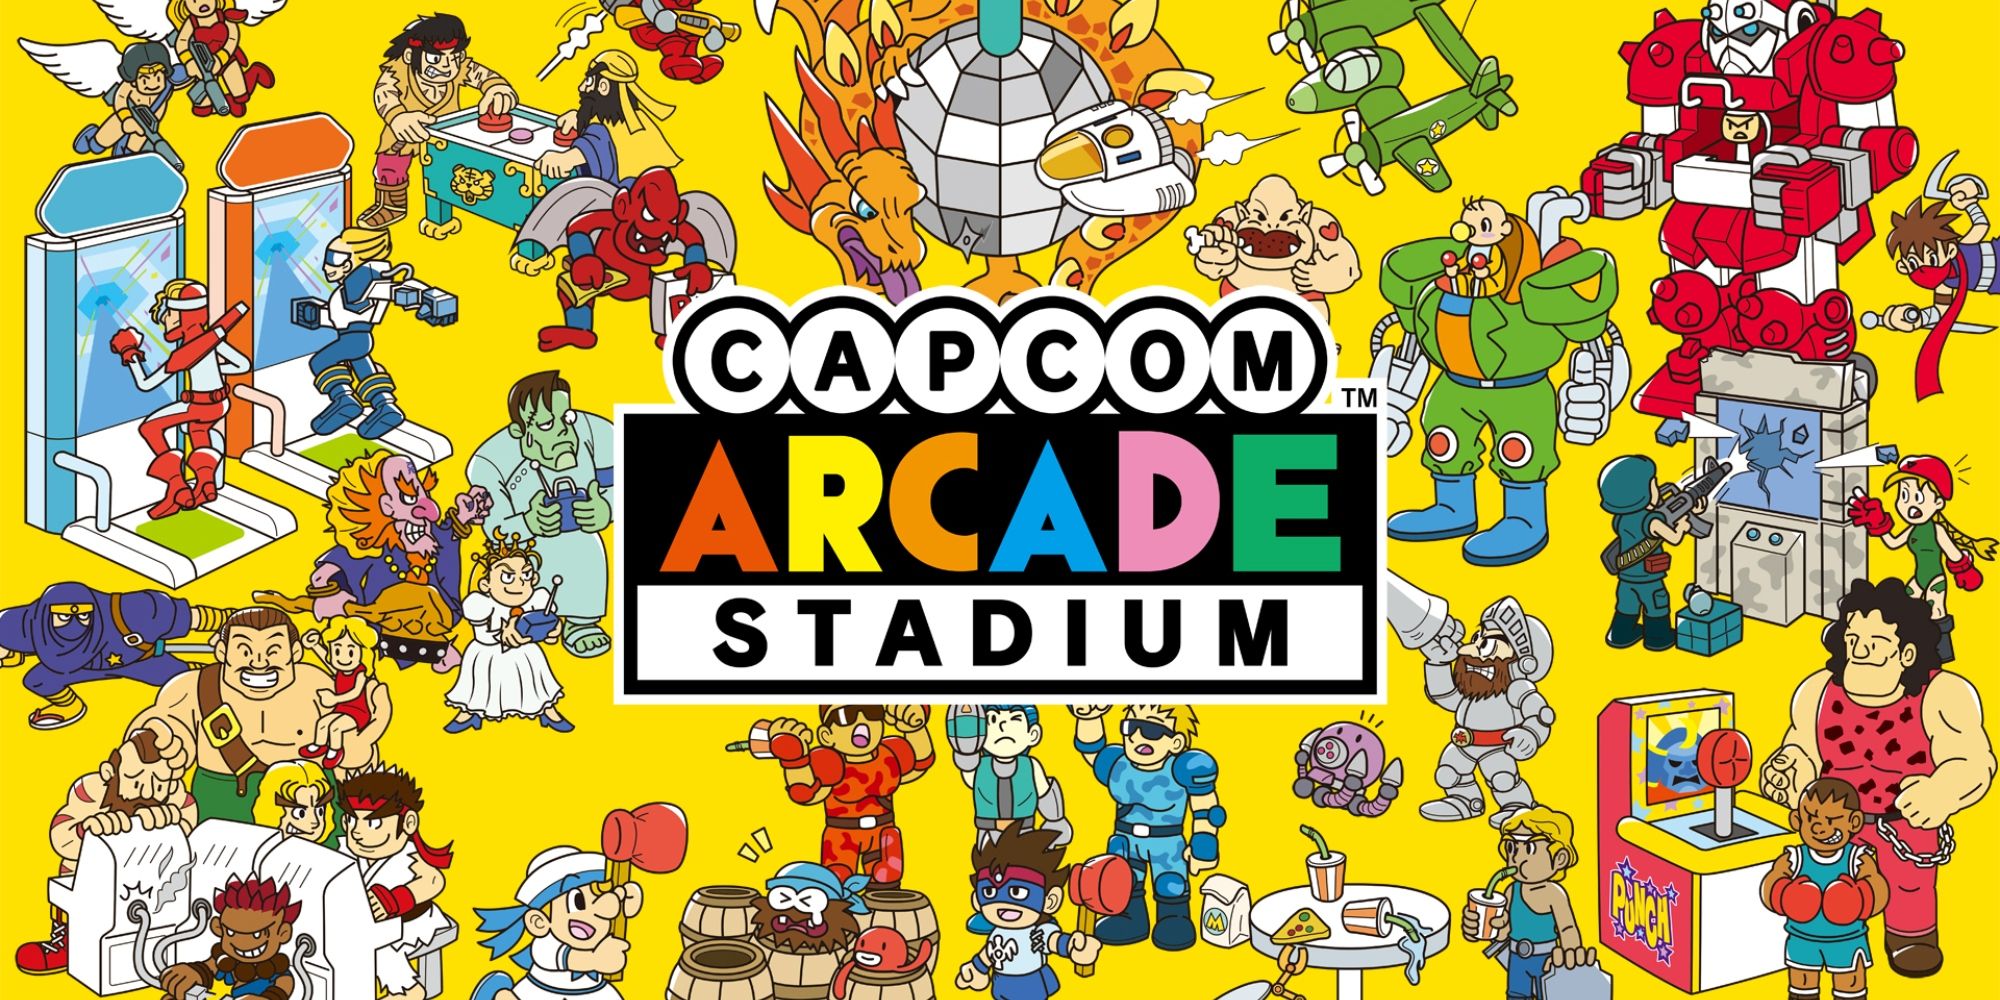 Capcom Arcade Stadium Review Header